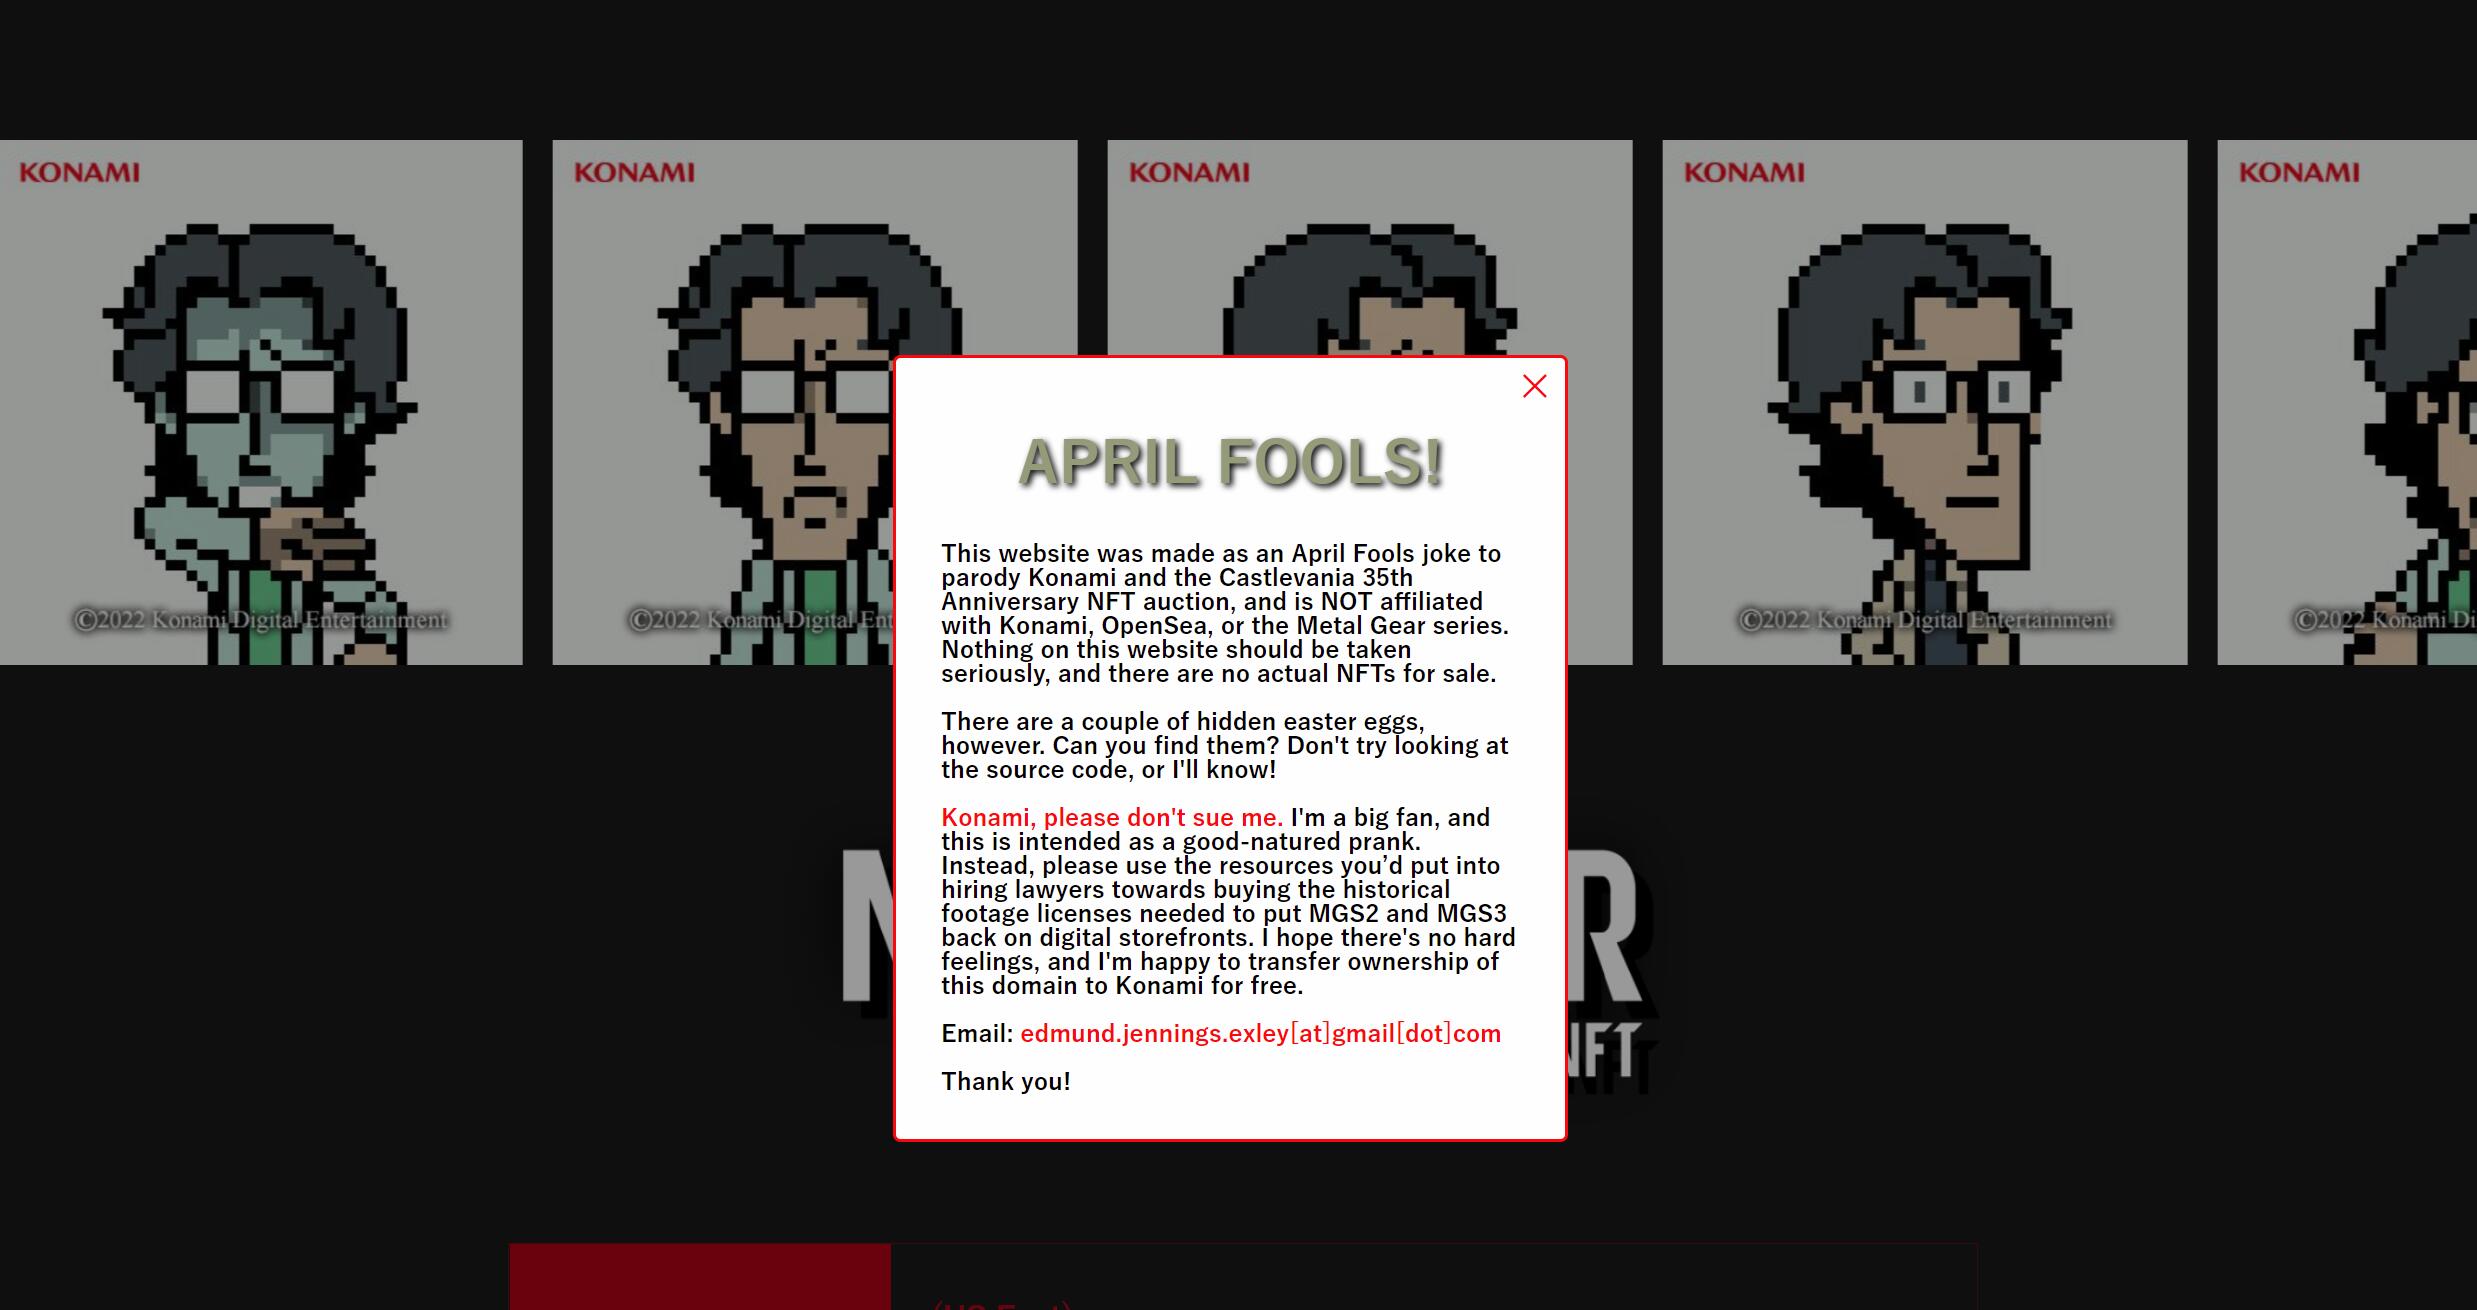 《合金装备》35周年纪念网站只是愚人节玩笑 并非游戏官方设立